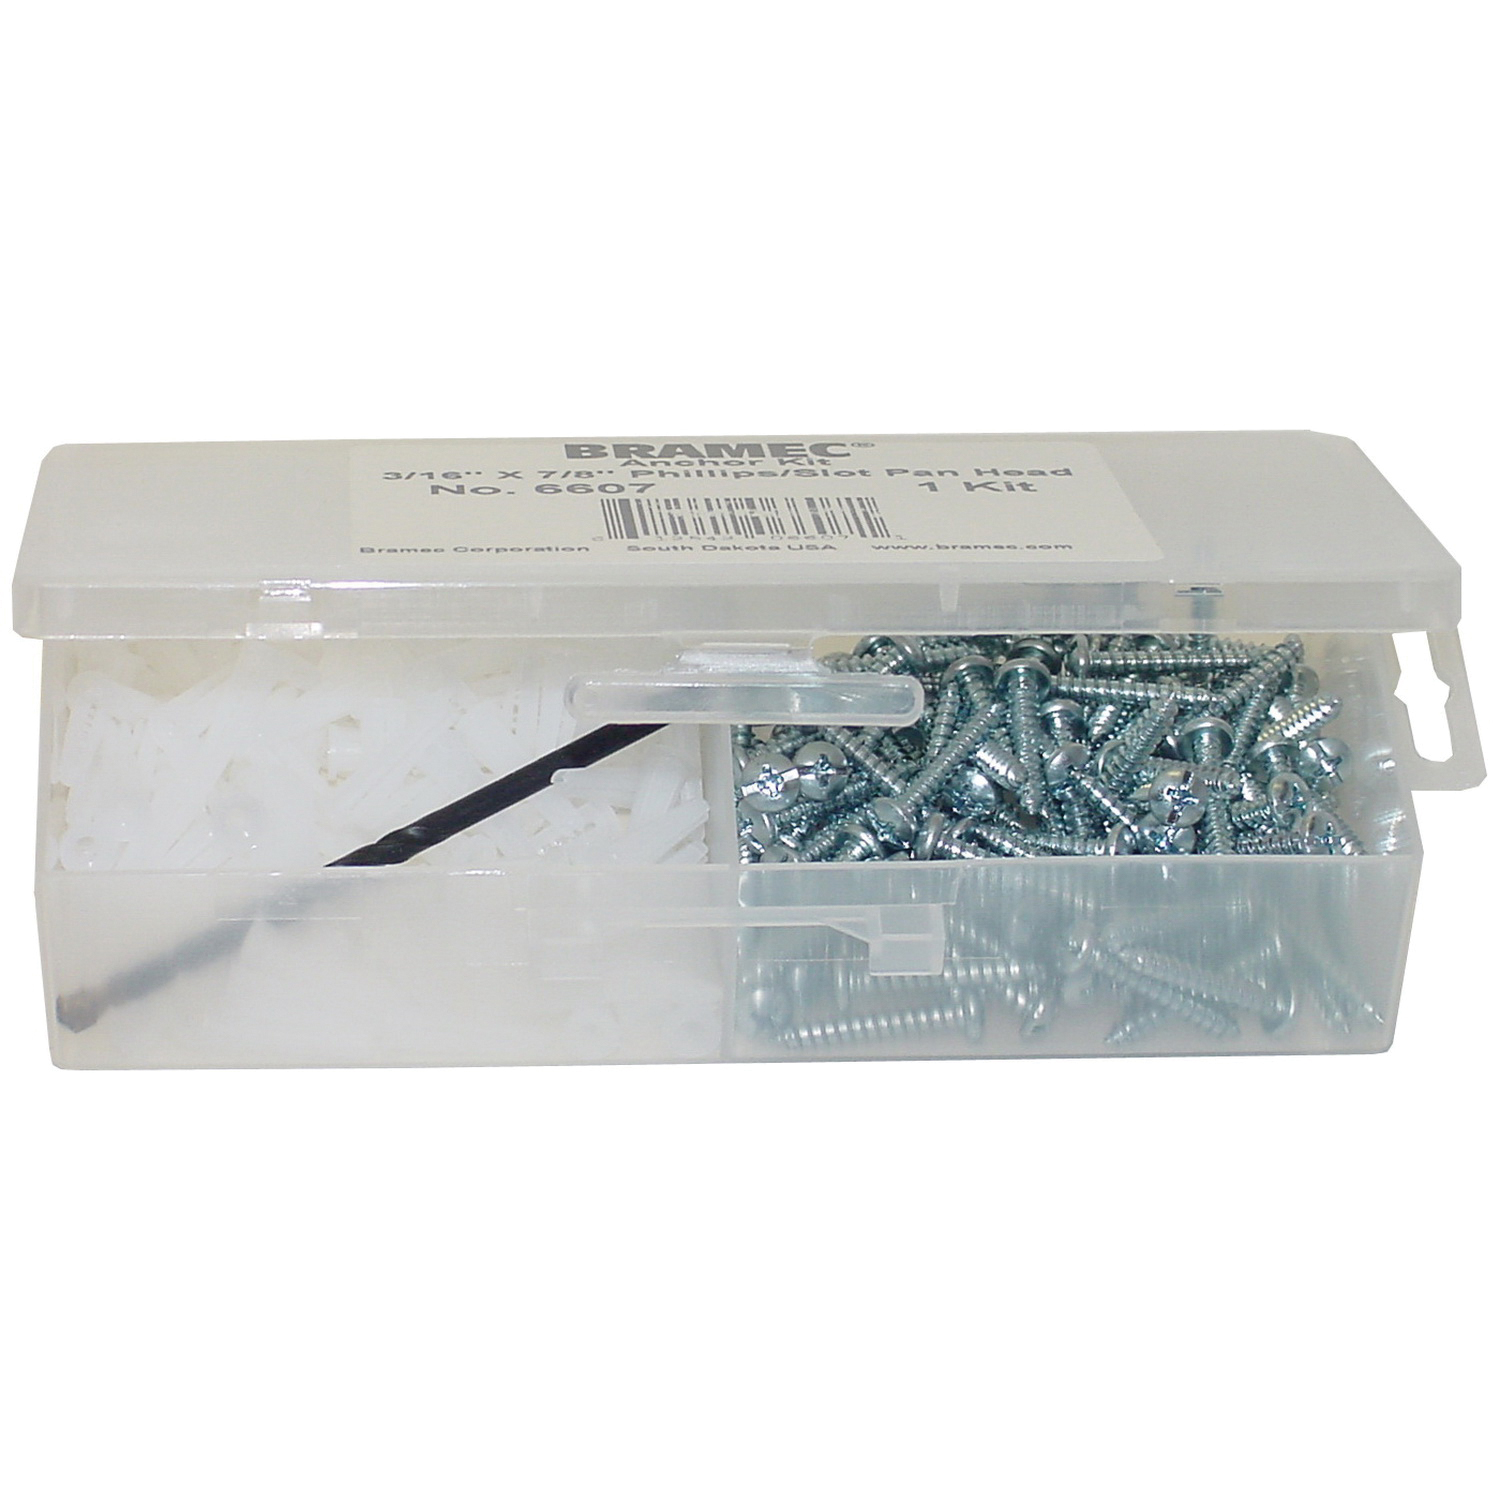 BRAMEC® 14083 Anchor Kit, 1/4 x 1 in, Plastic